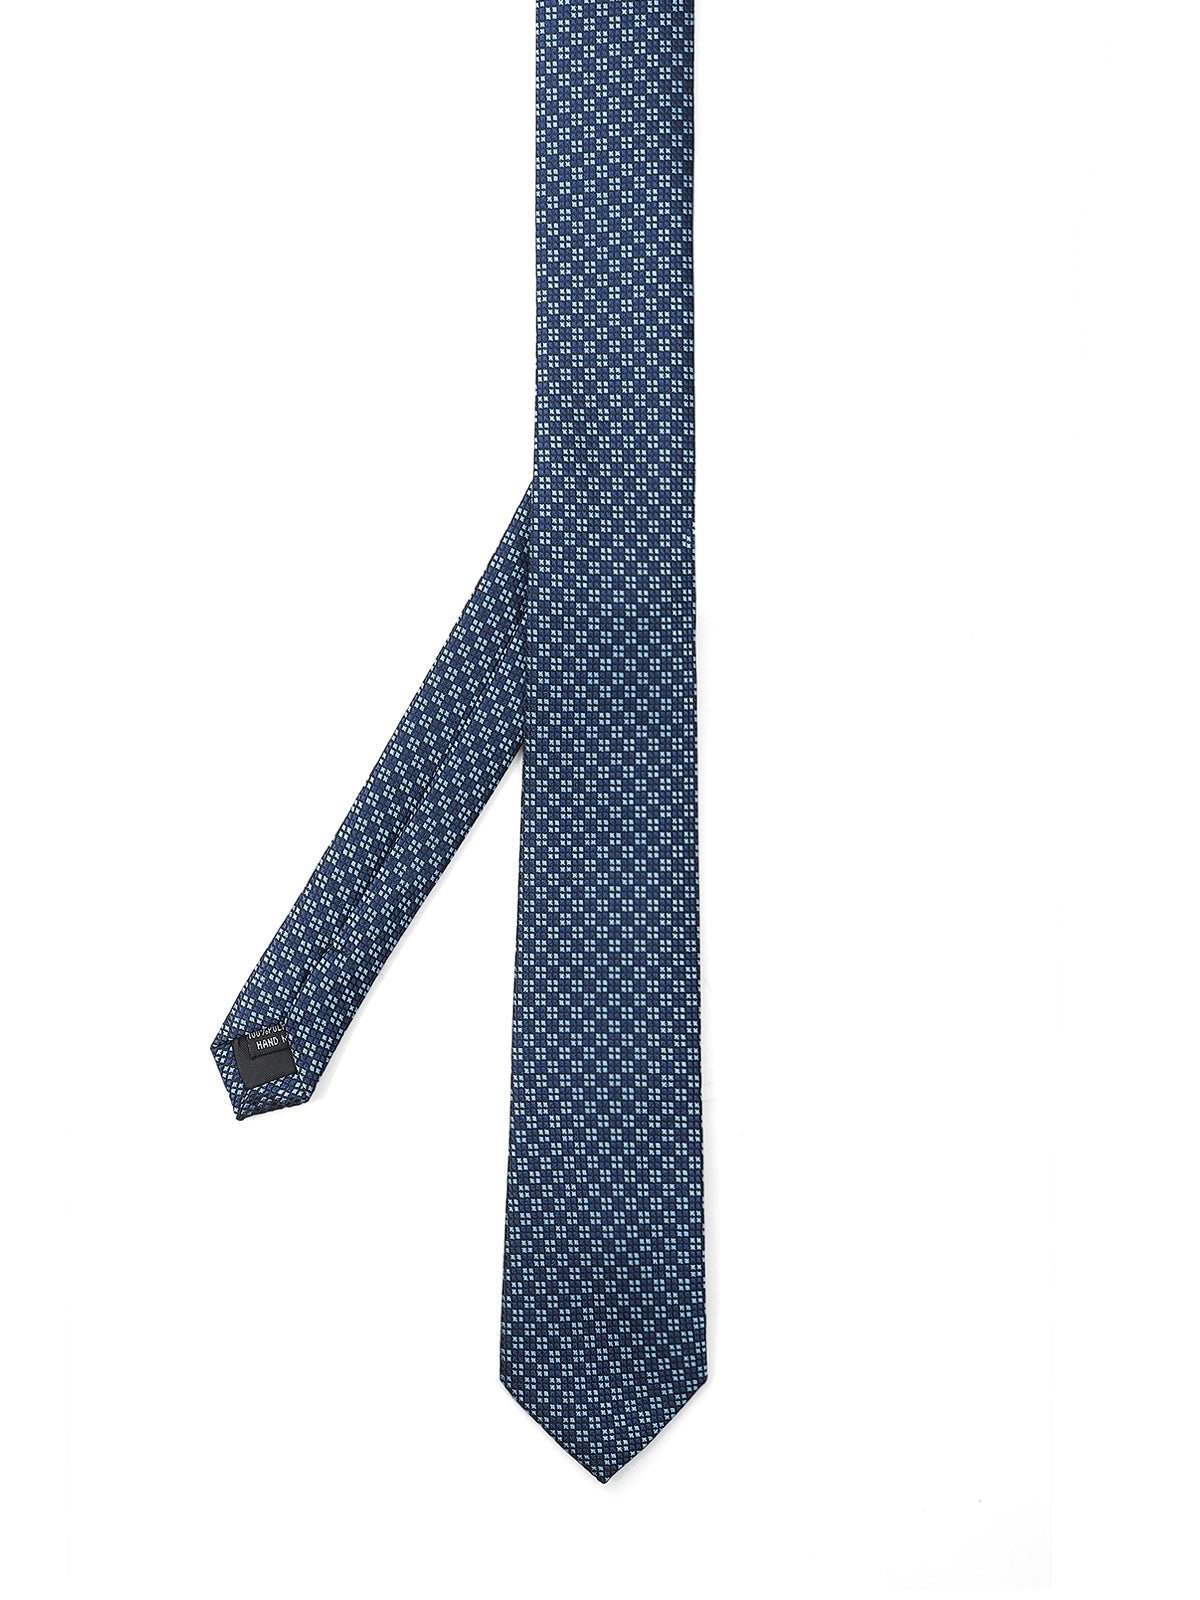 Blue Tie - EAMT24-054